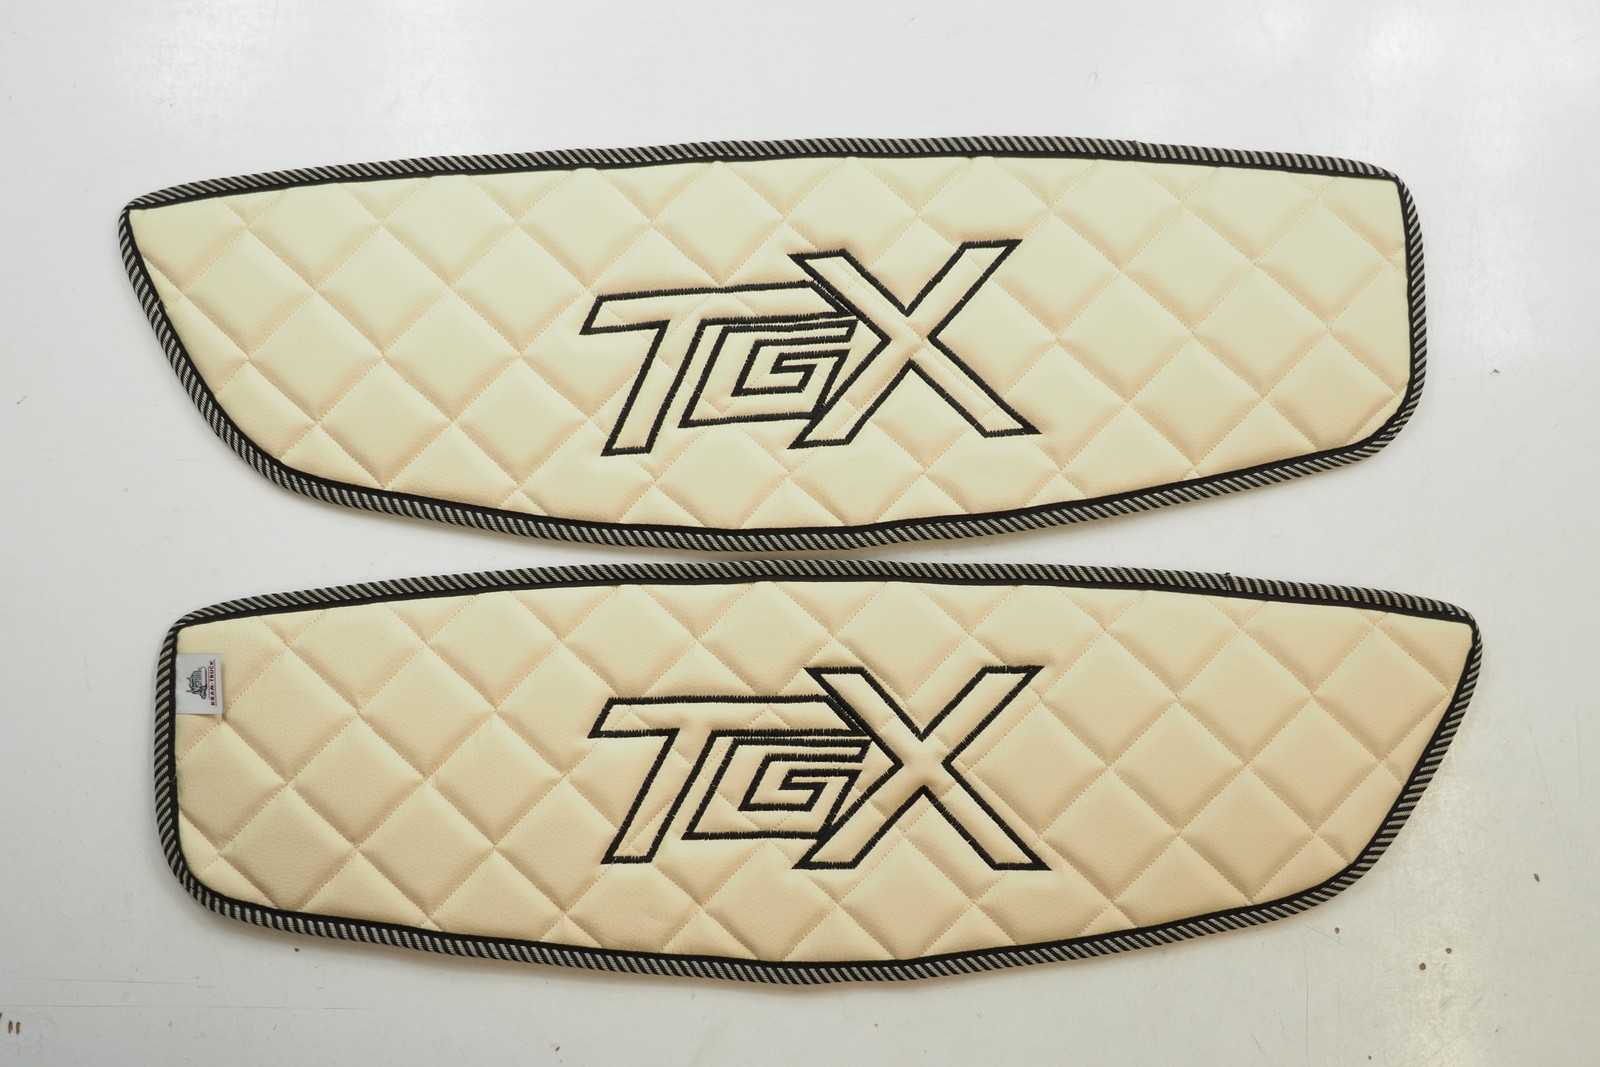 Door covers in Ruter - MAN TGX 2007-2020